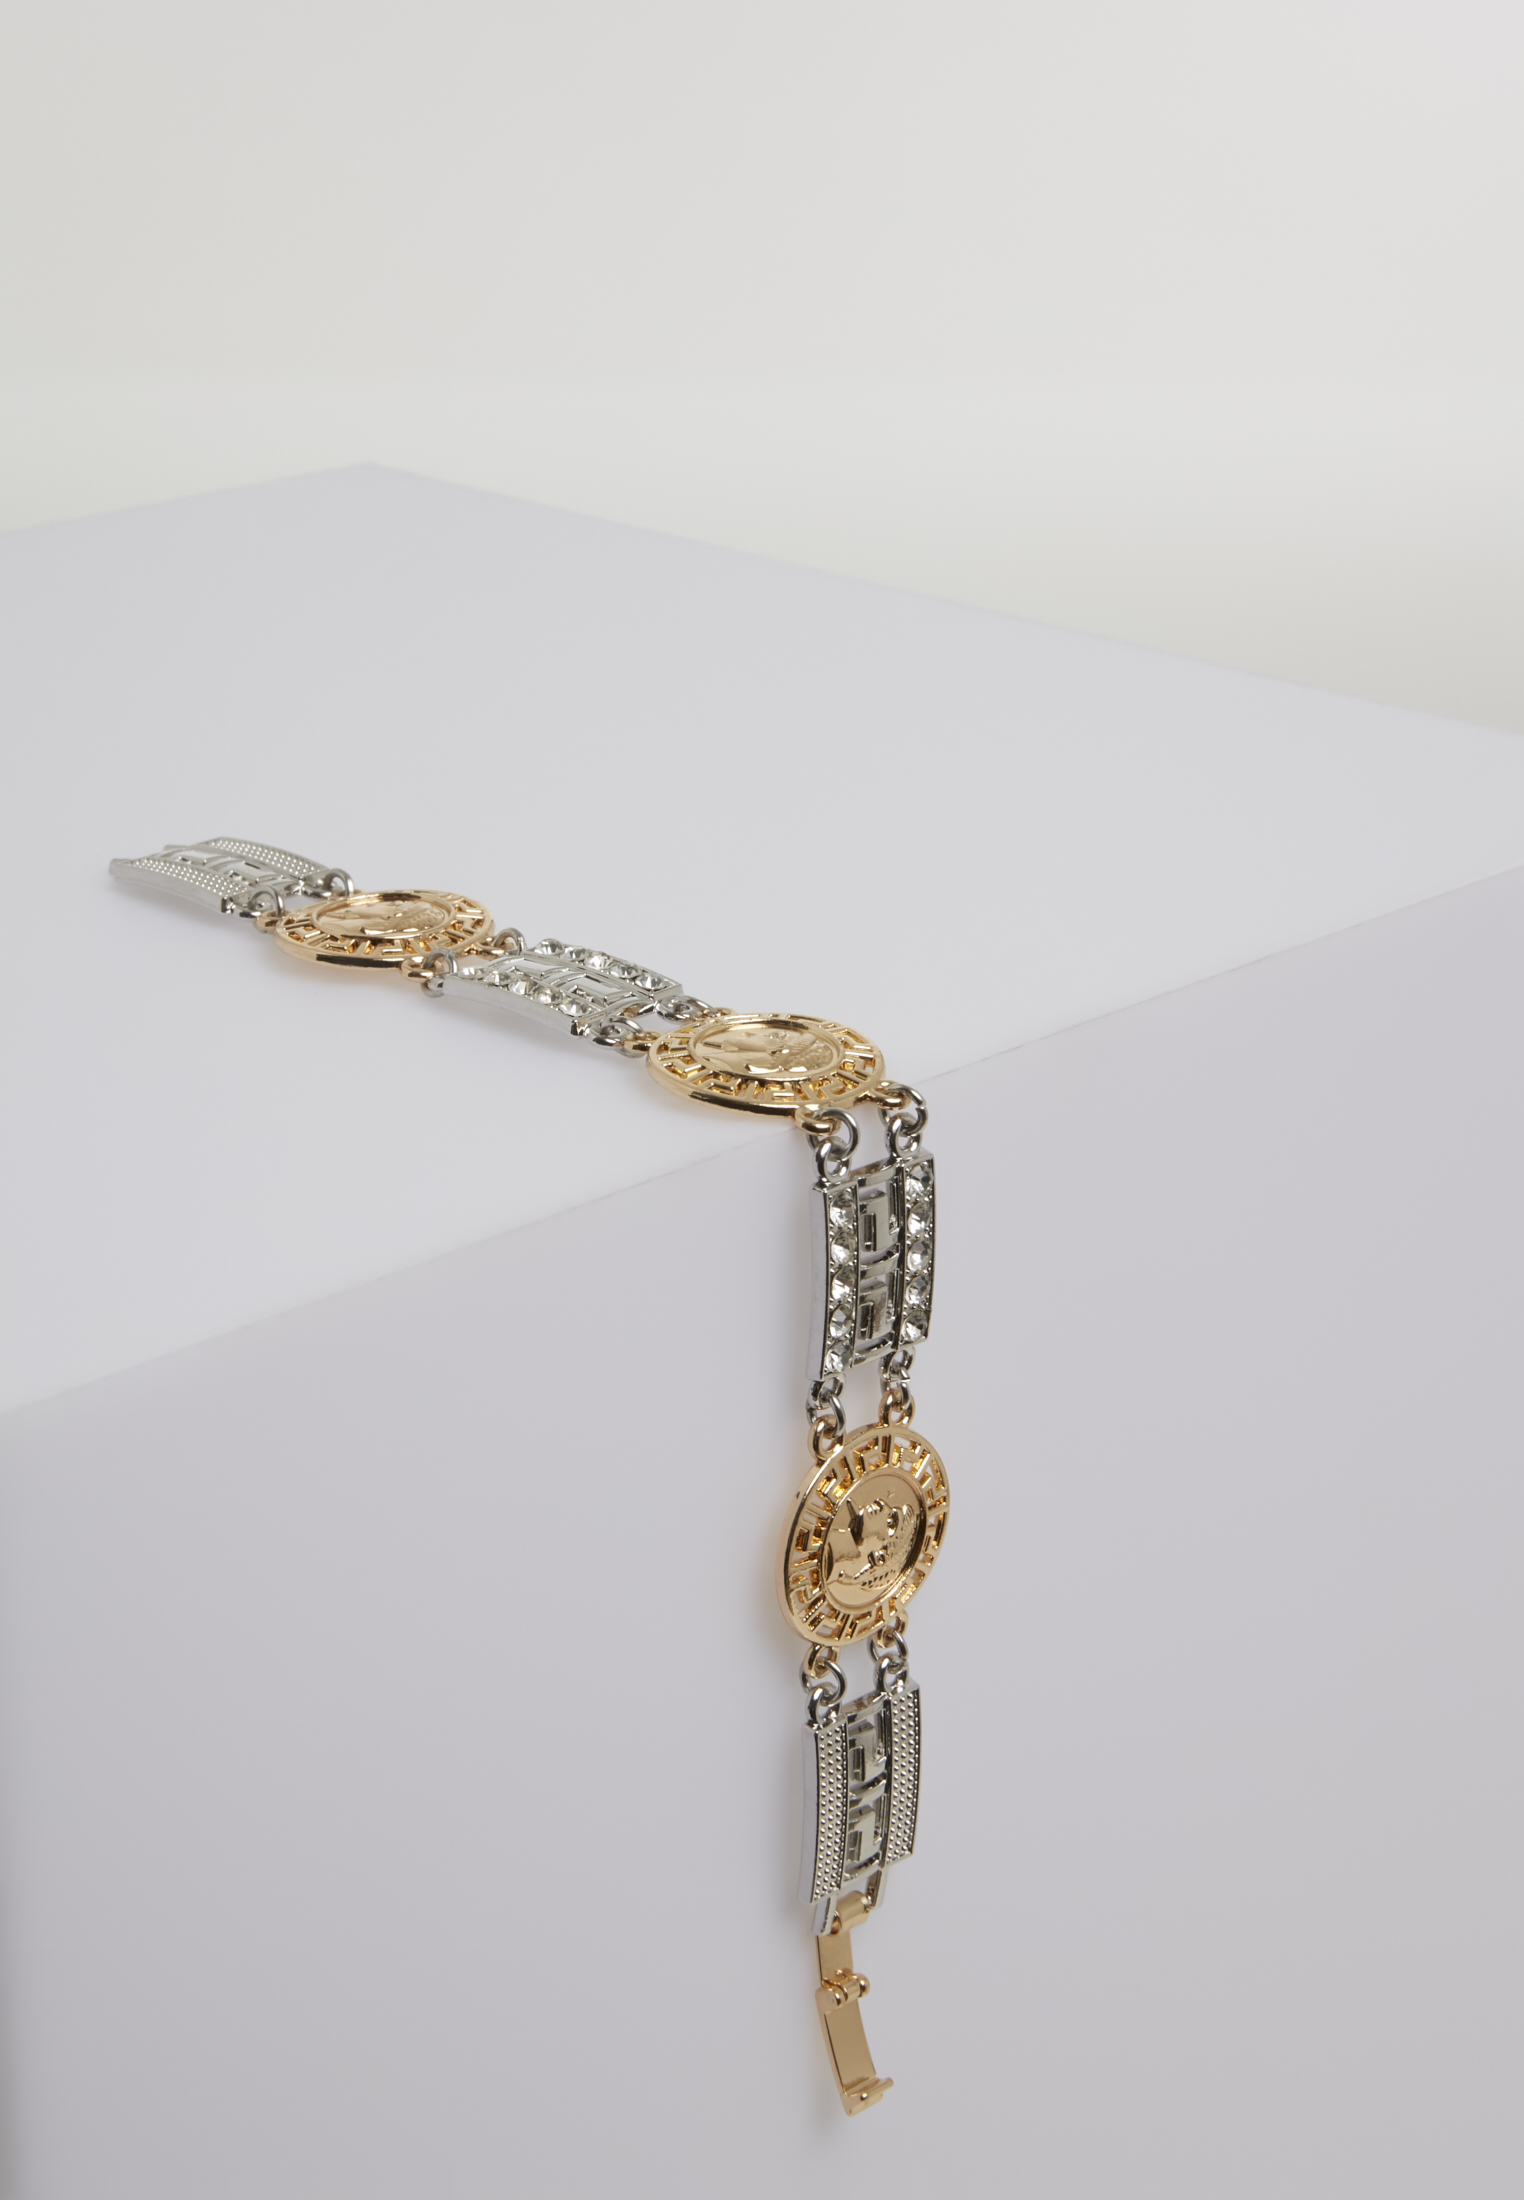 Schmuck Fancy Bracelet in Farbe silver/gold